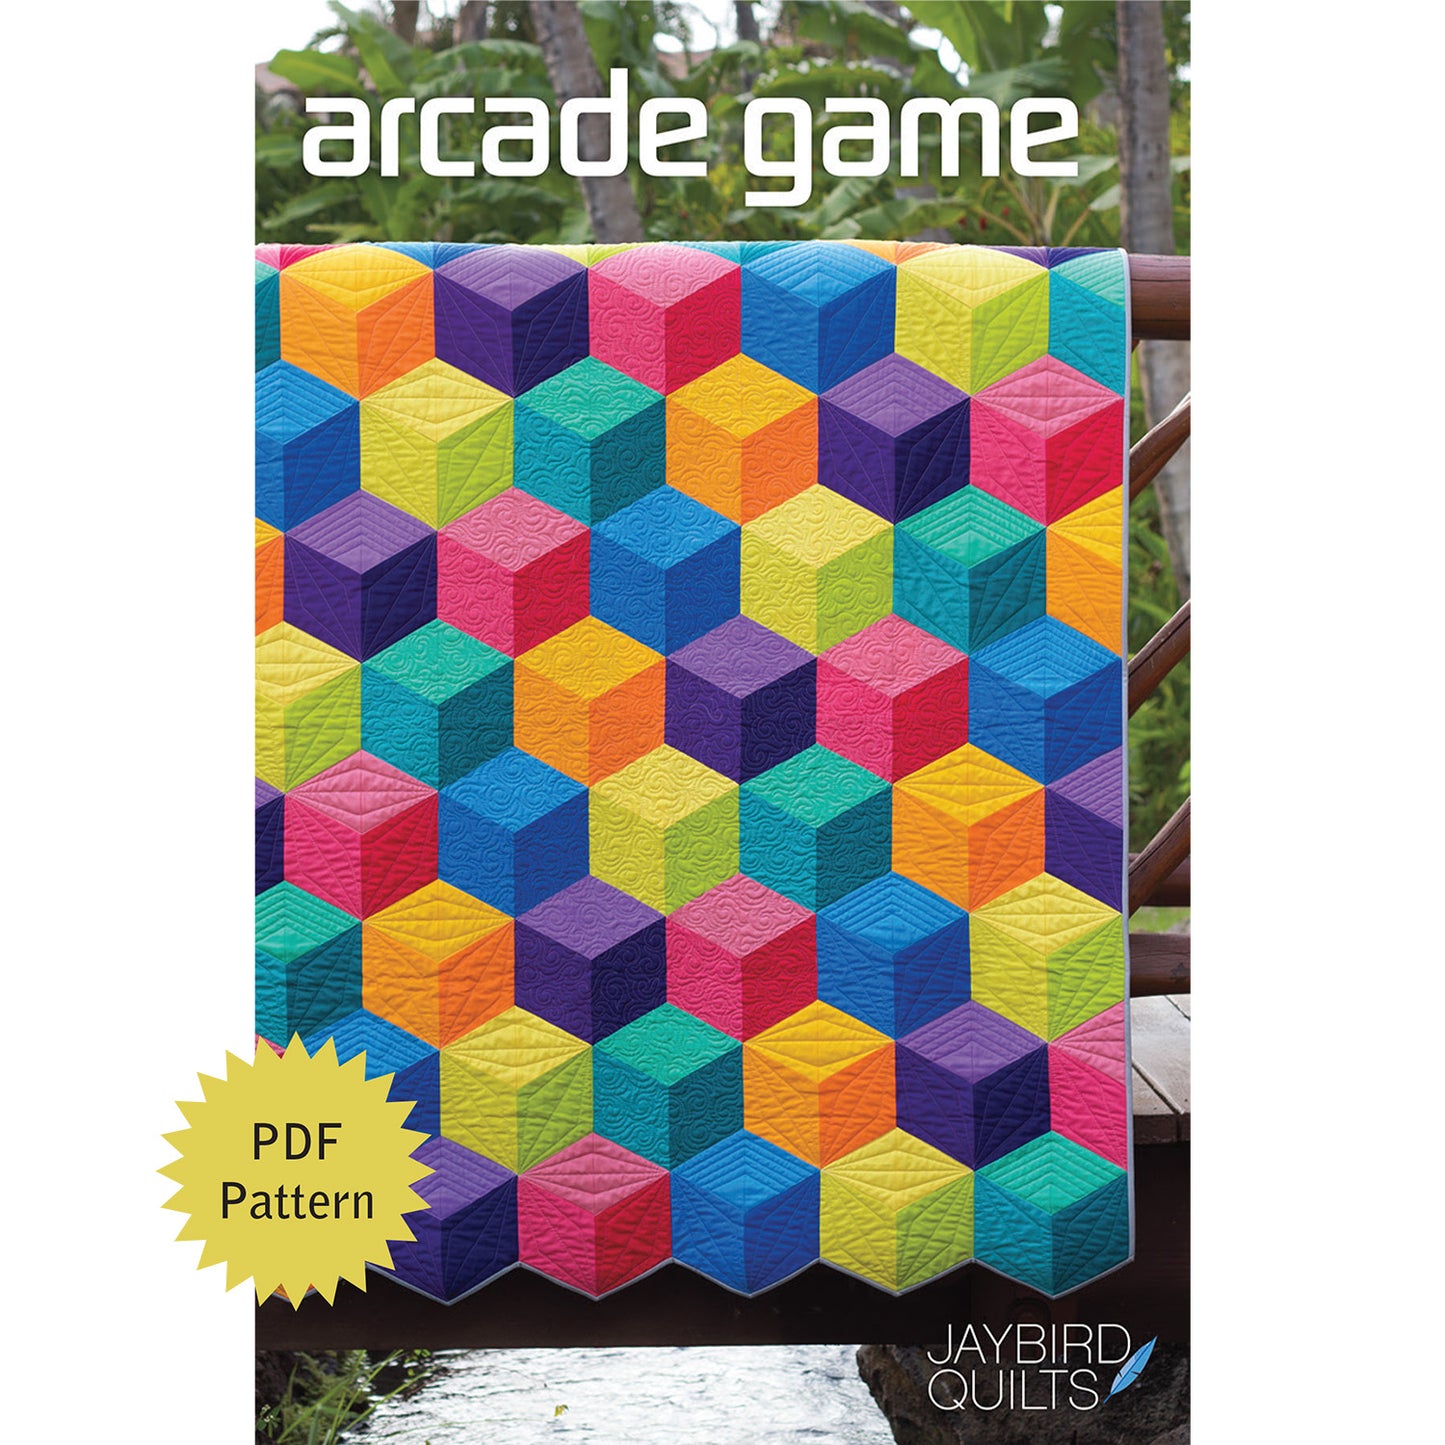 Arcade Game PDF Pattern